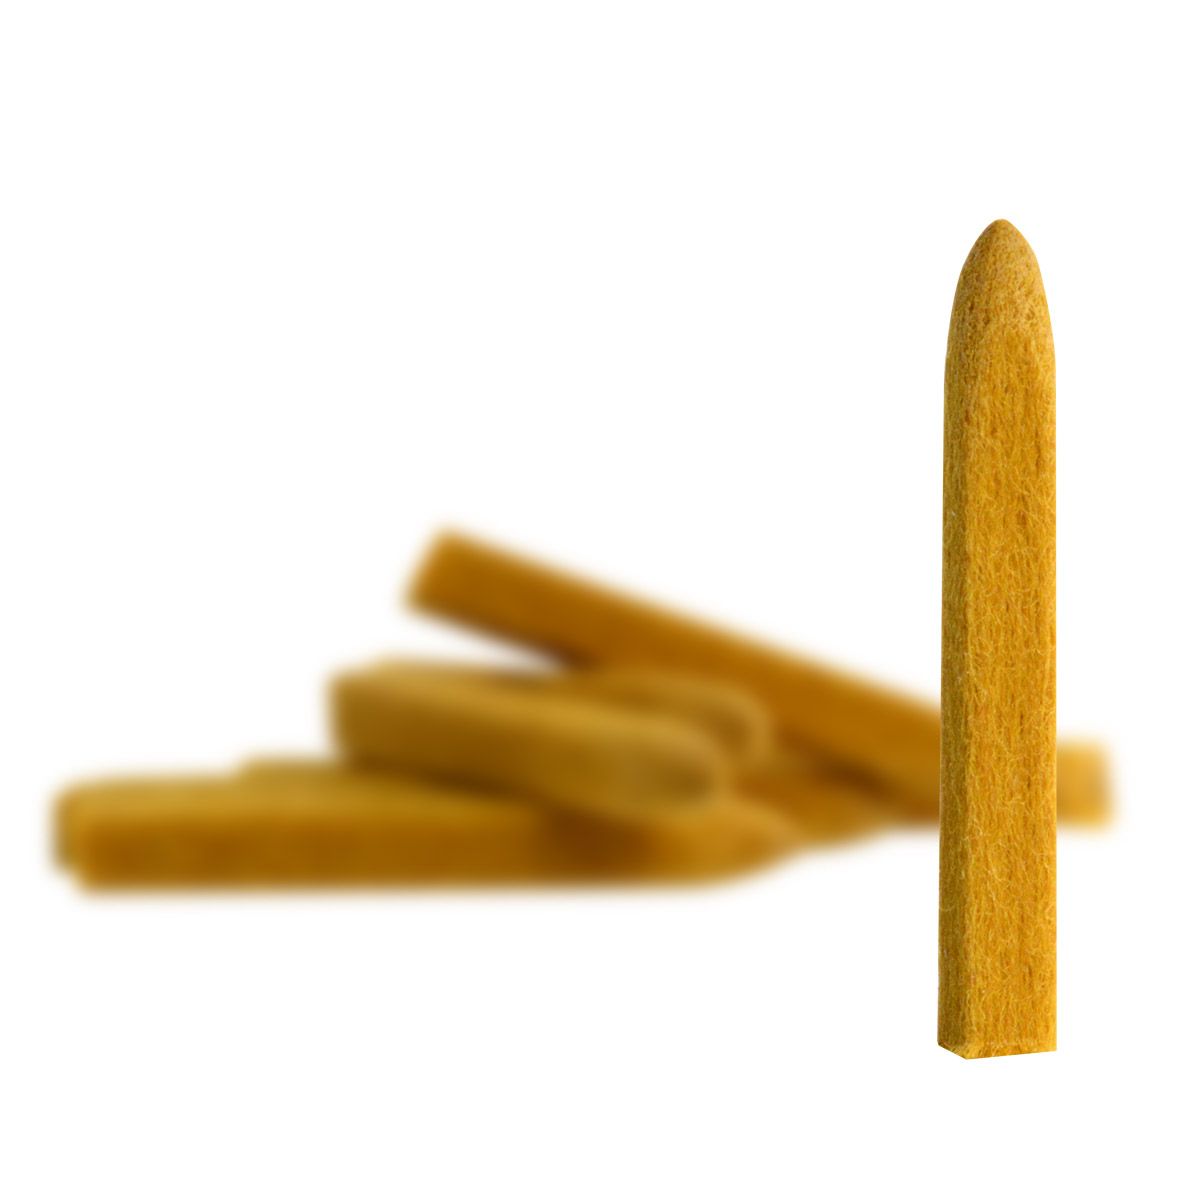 Feutres pour galvanoplastie stylo, marron (10 pcs)